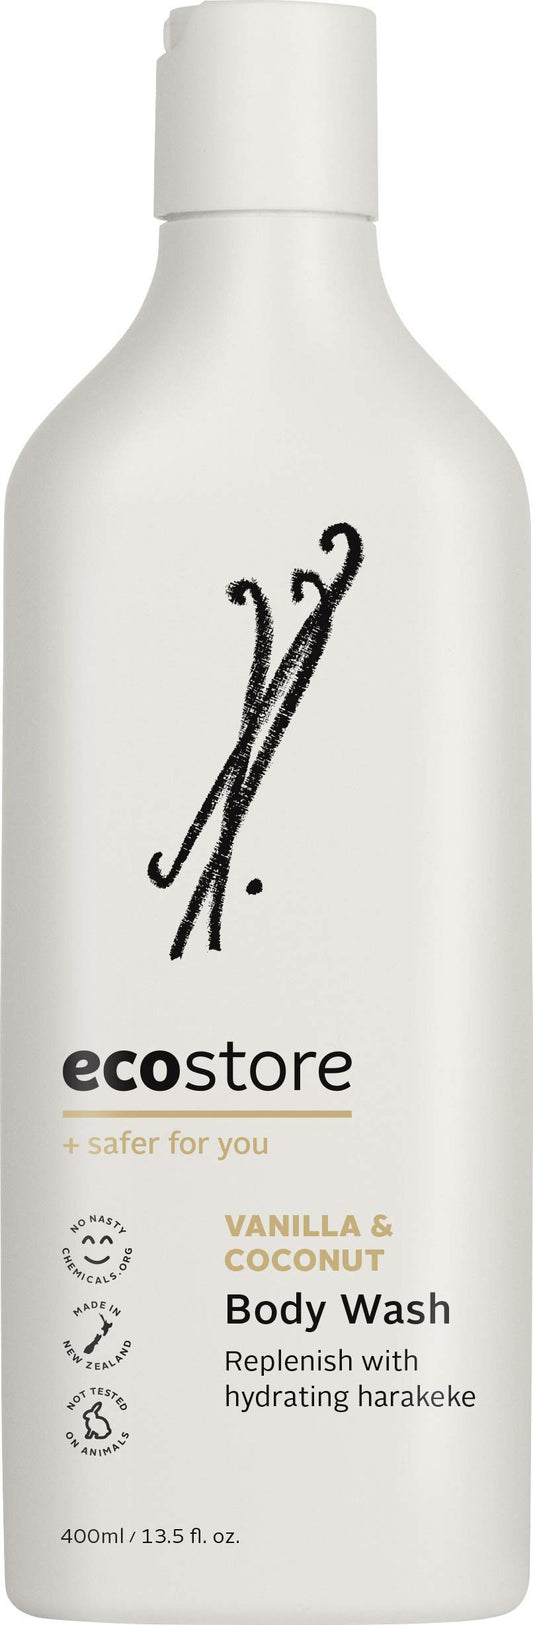 Ecostore Body Wash Replenishing & Hydrating 400ml, Vanilla & Coconut Fragrance